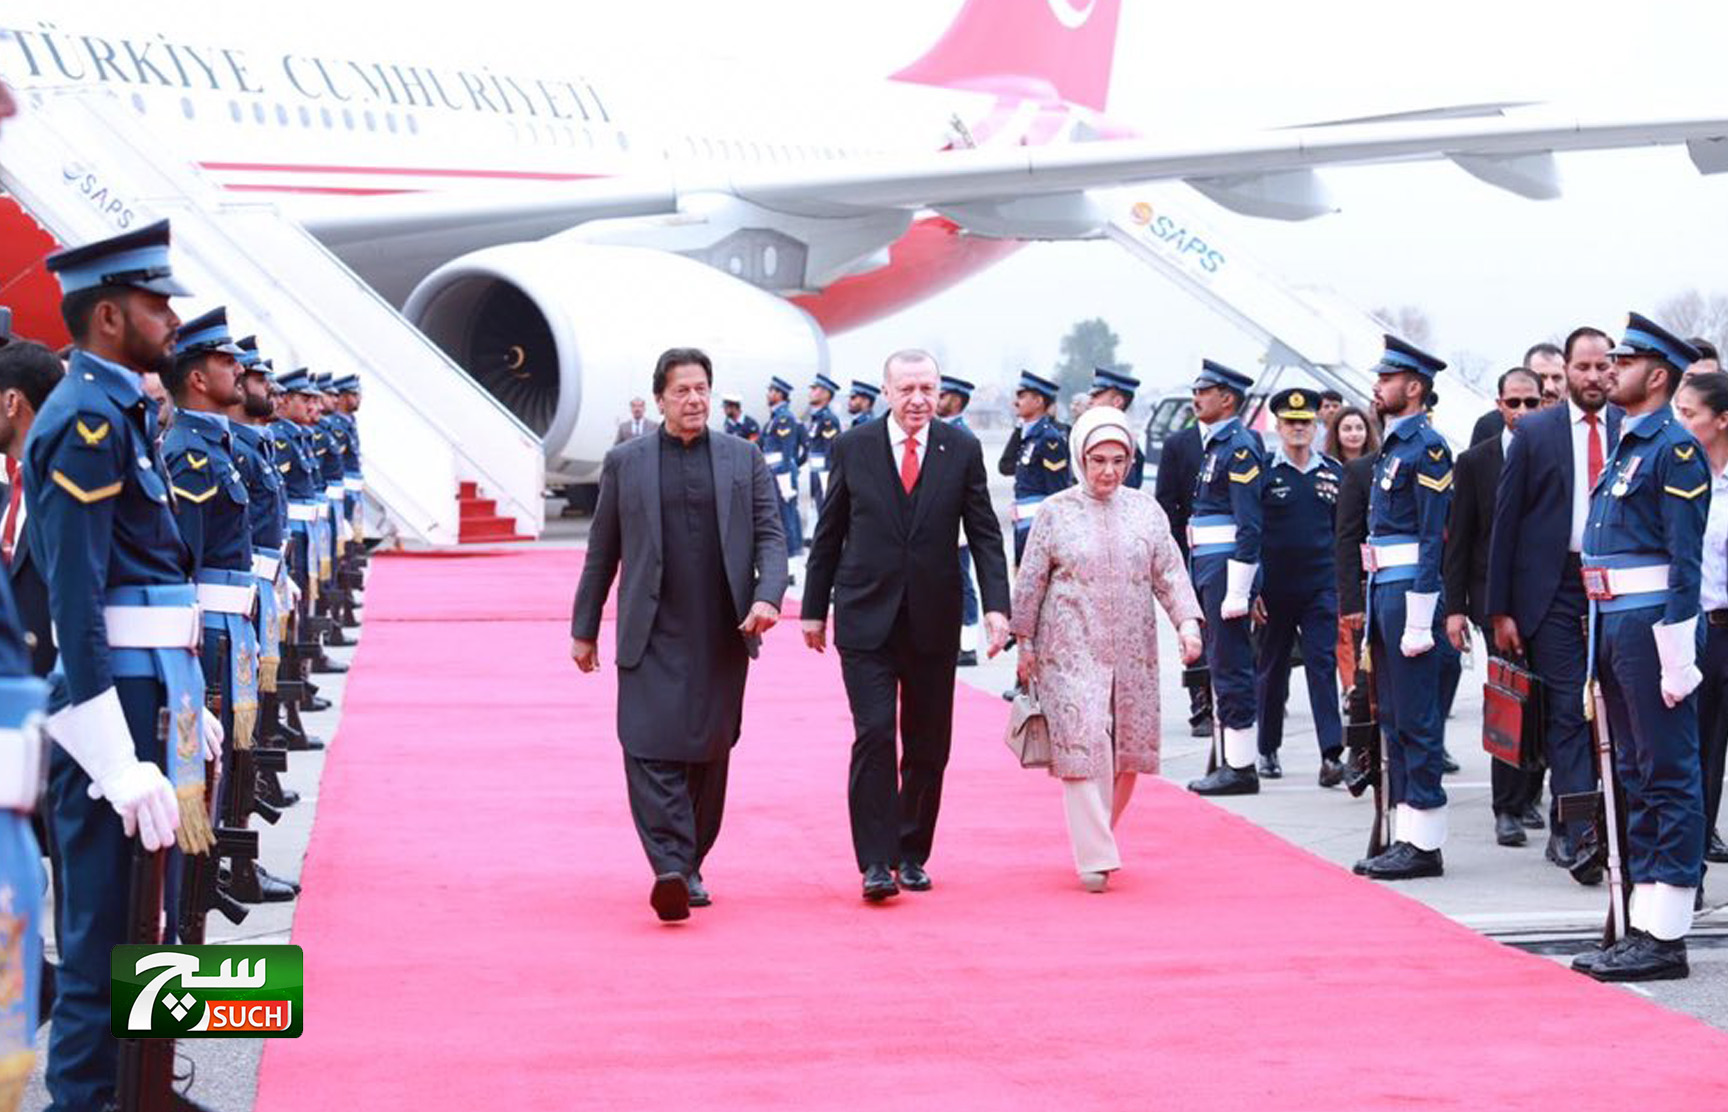 أردوغان يصل إلى باكستان في زيارة تستغرق يومين